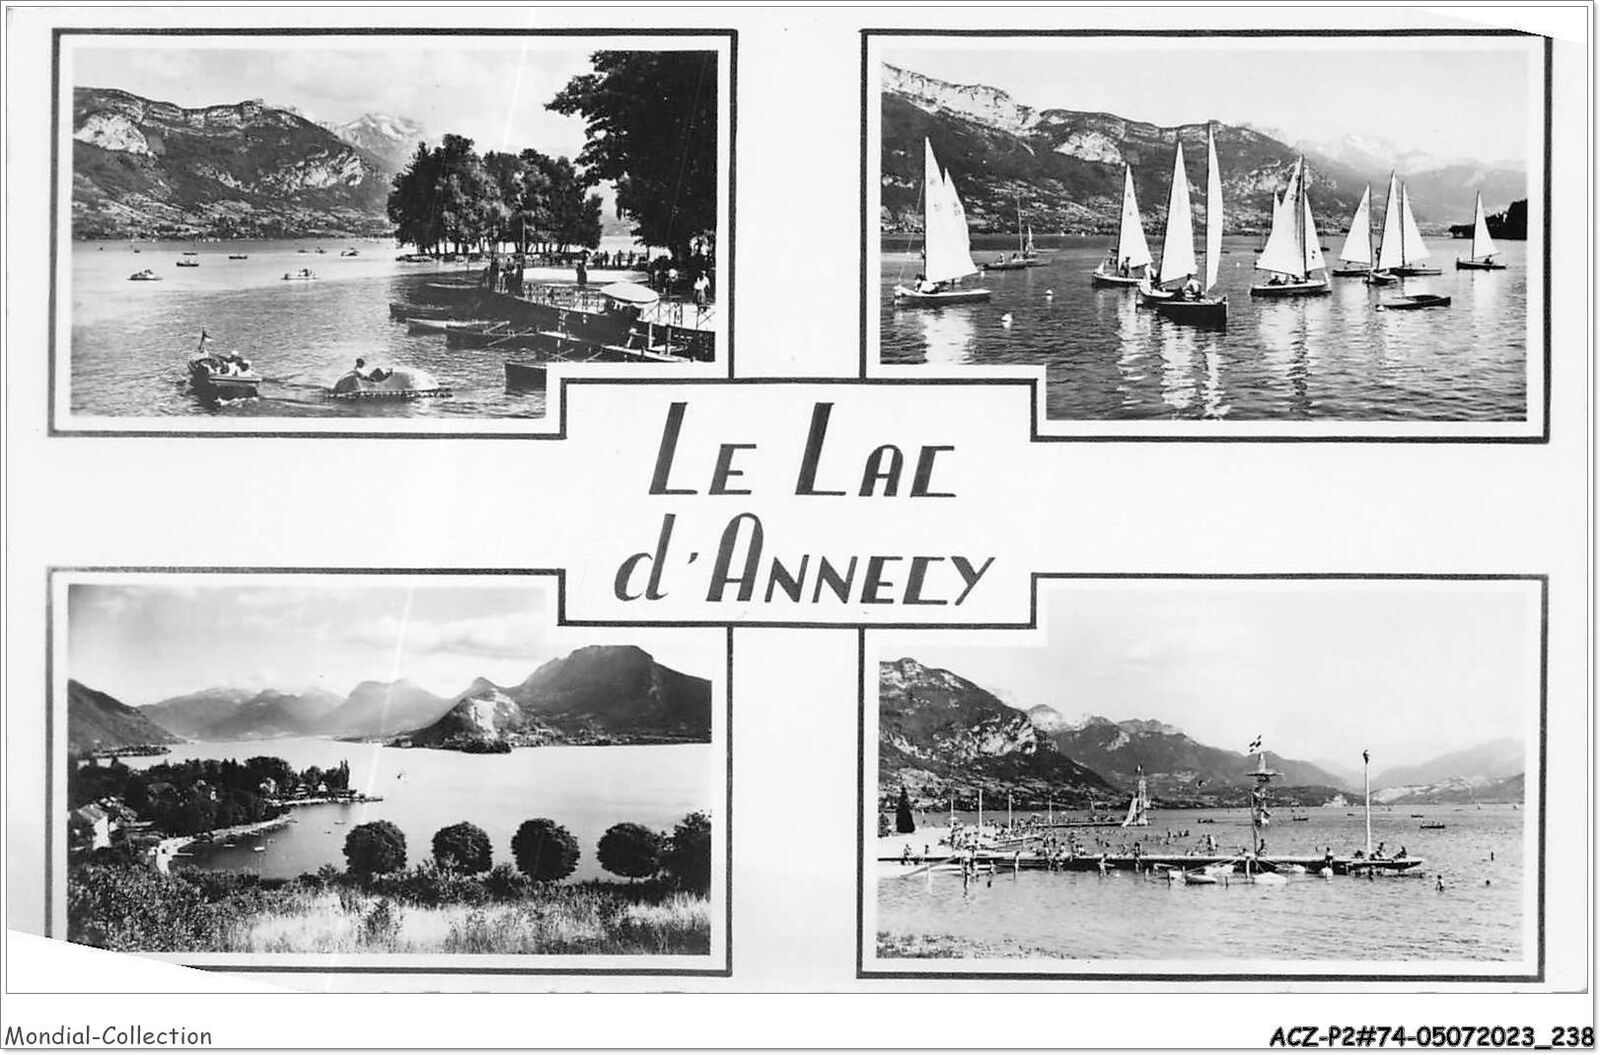 ACZP2-74-0121 - Lake Annecy - souvenir